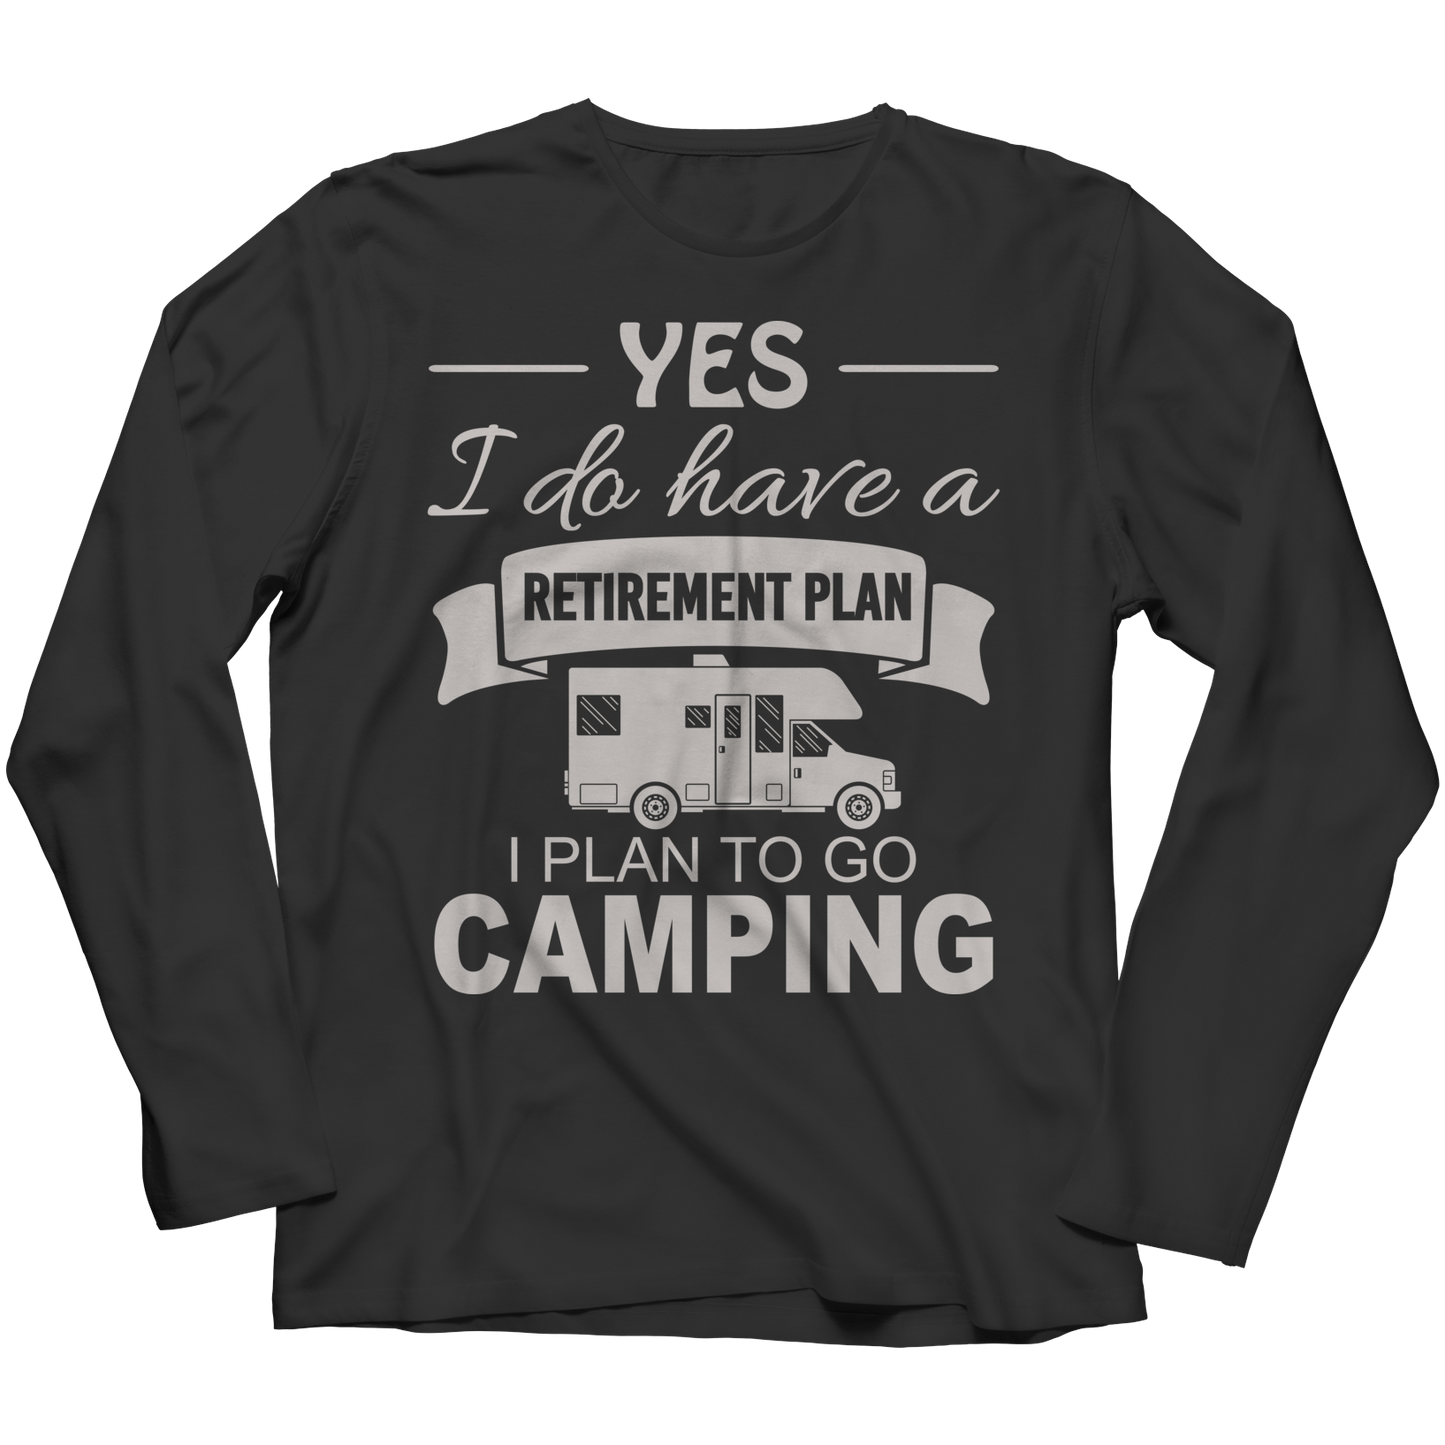 Camping Retirement Plan Shirt